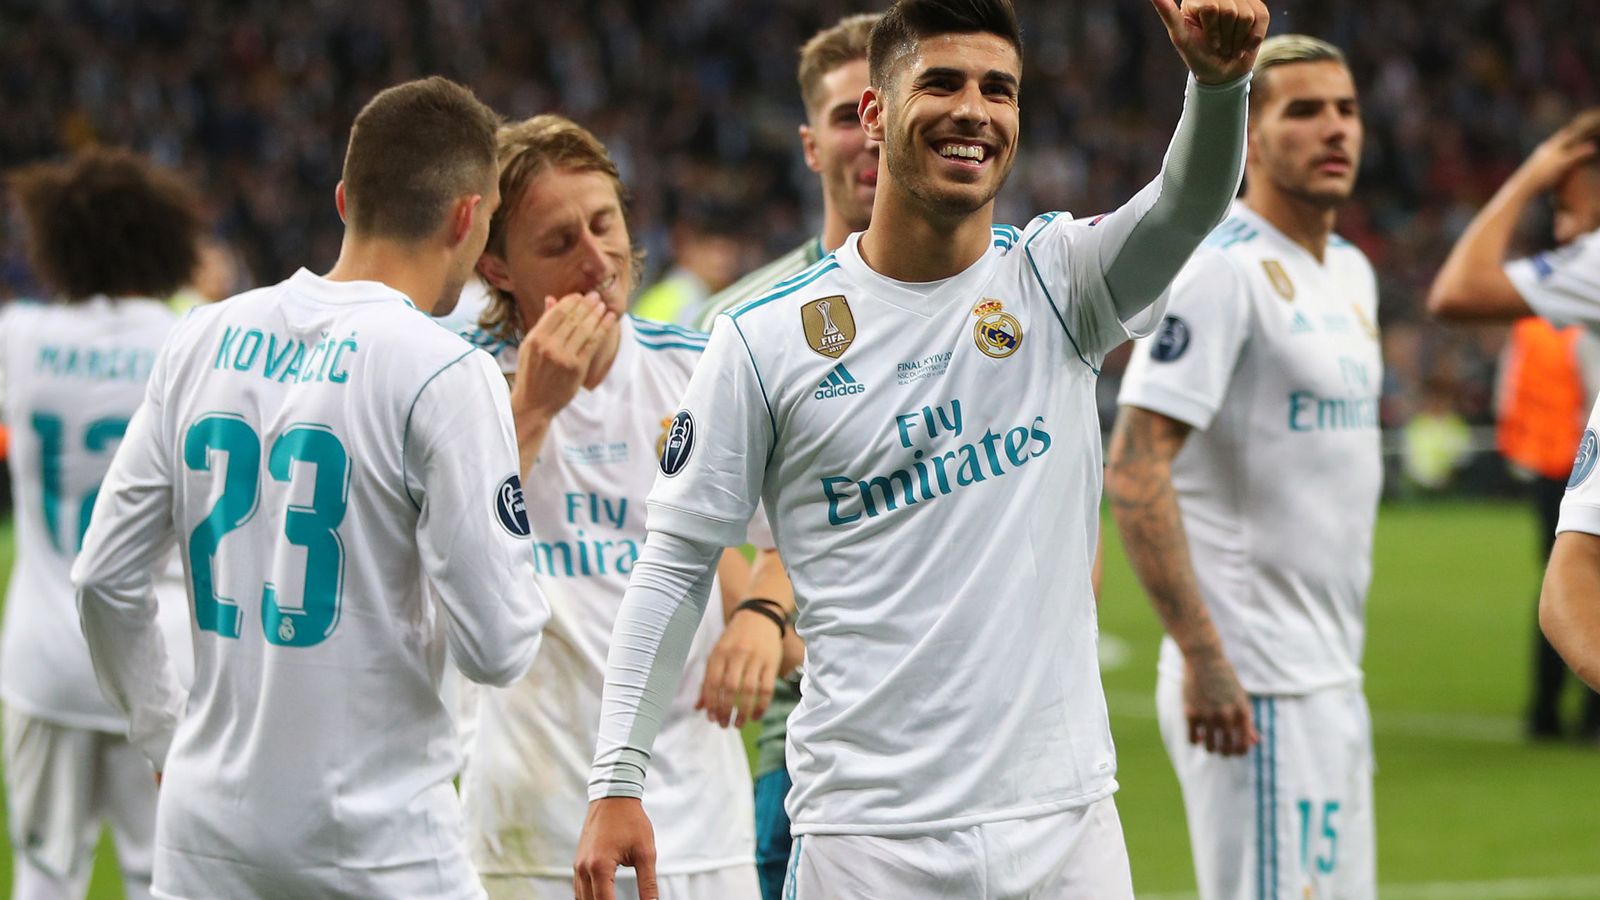 Foto: Marco Asensio, sonriente, celebra un gol con el Real Madrid en un partido de la Champions. (Reuters)